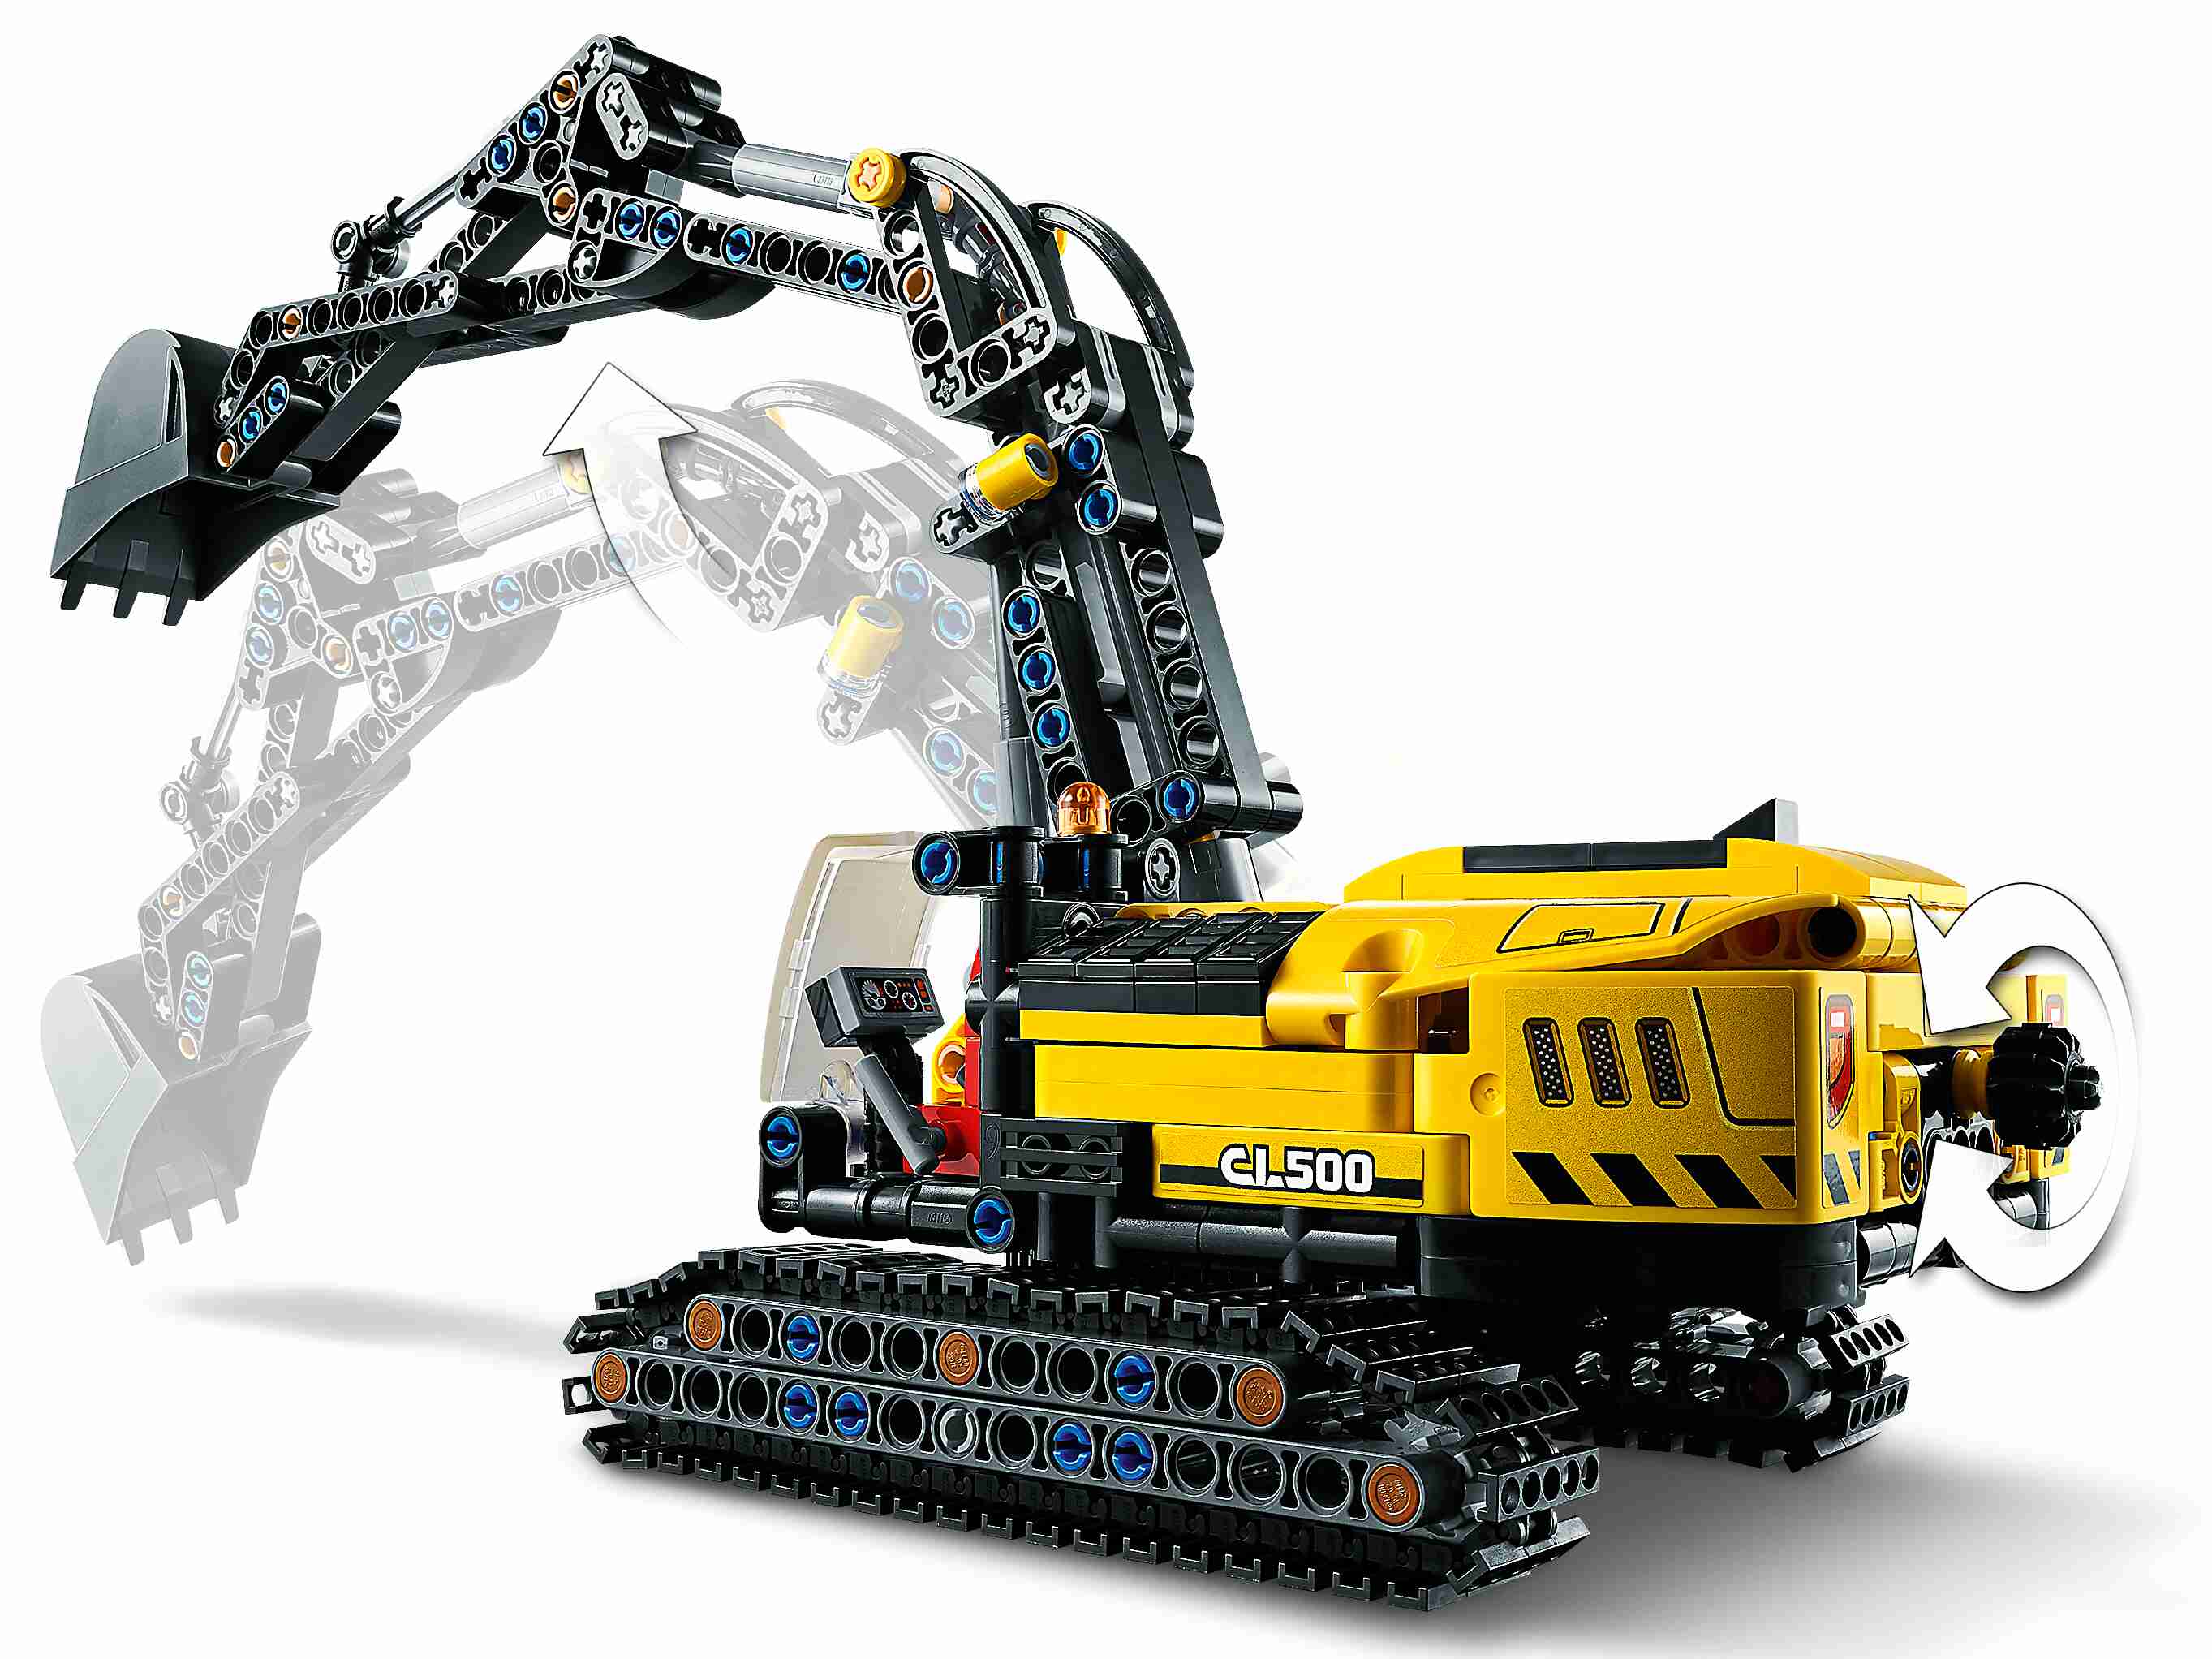 LEGO 42121 Technic Hydraulikbagger - Traktor 2-in-1 Modell, Bagger Baufahrzeug